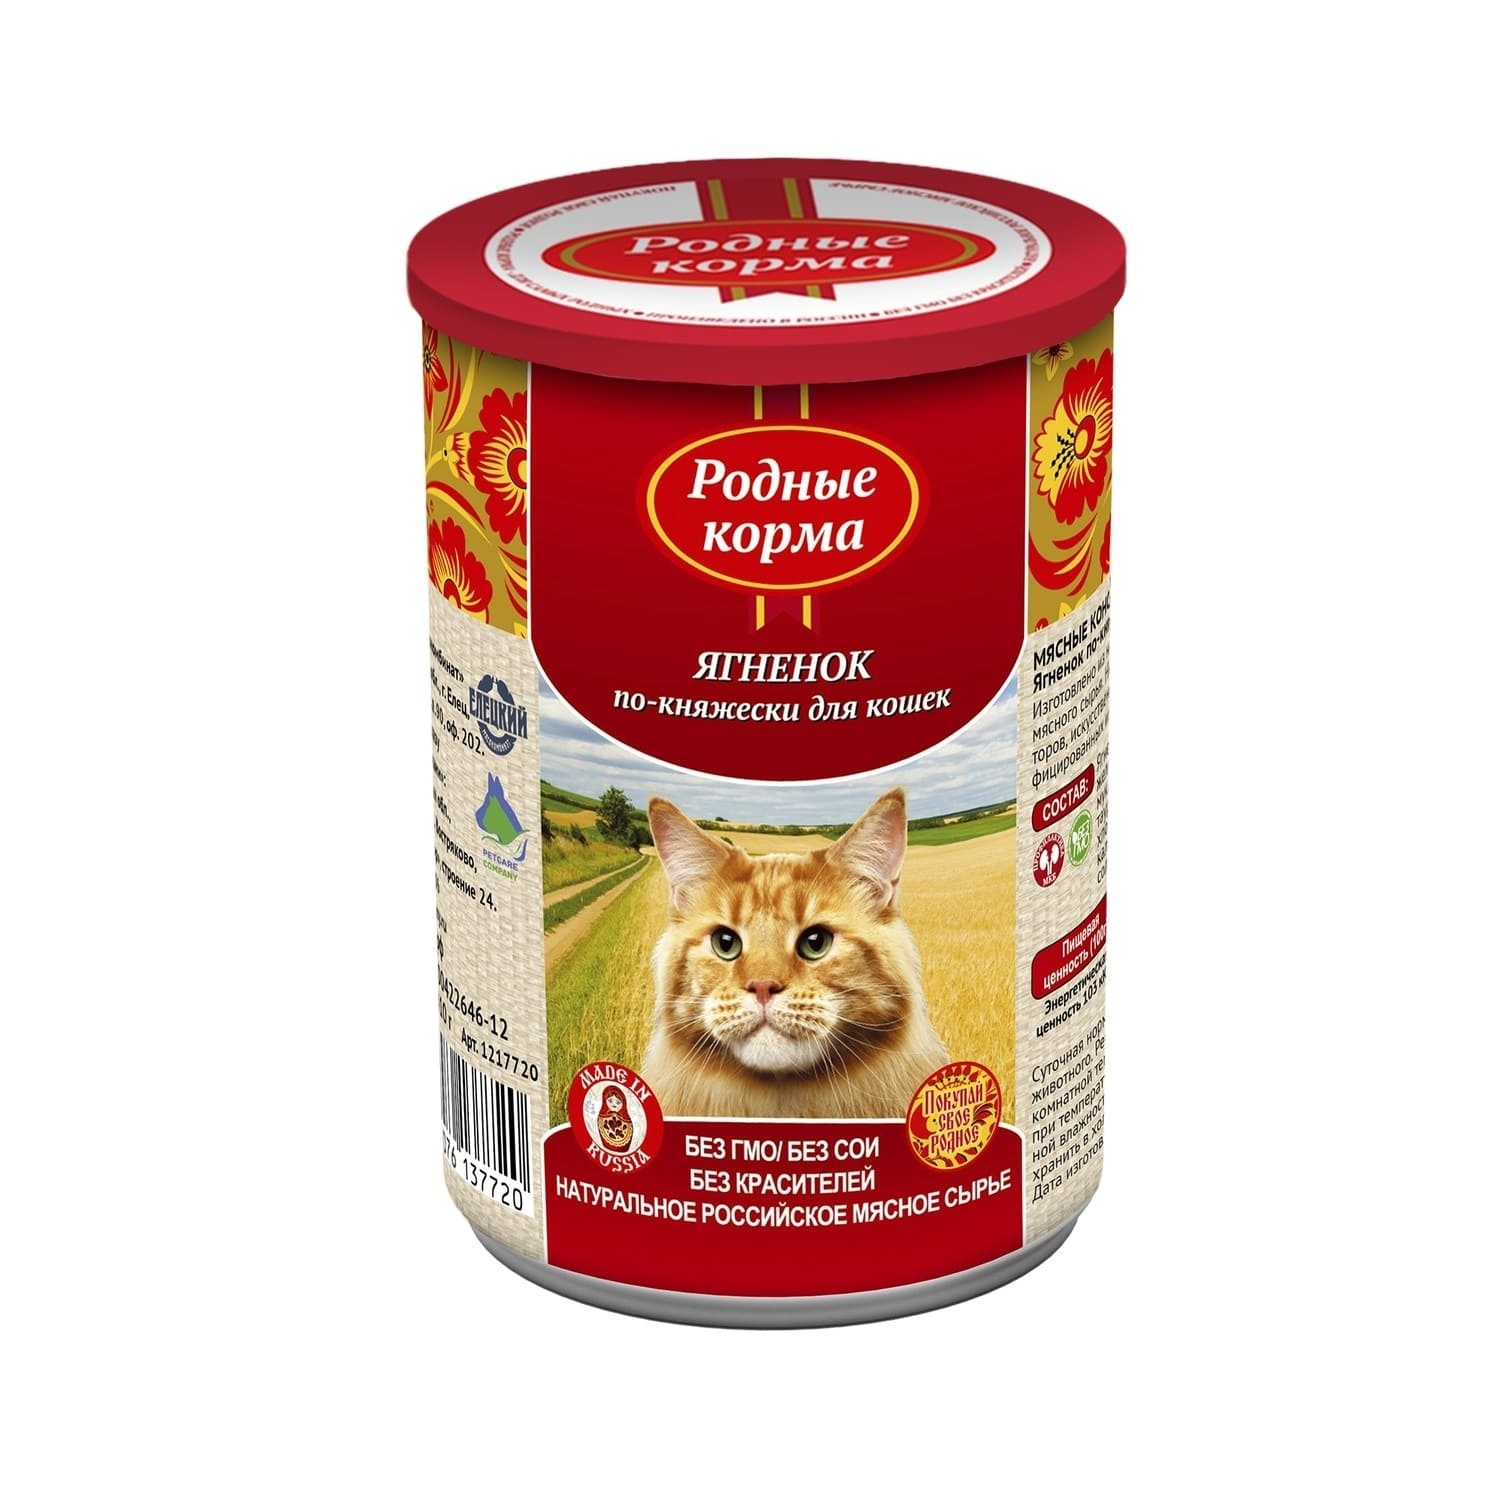 Родные корма Родные корма консервы для кошек, ягненок по-княжески (410 г) цена и фото